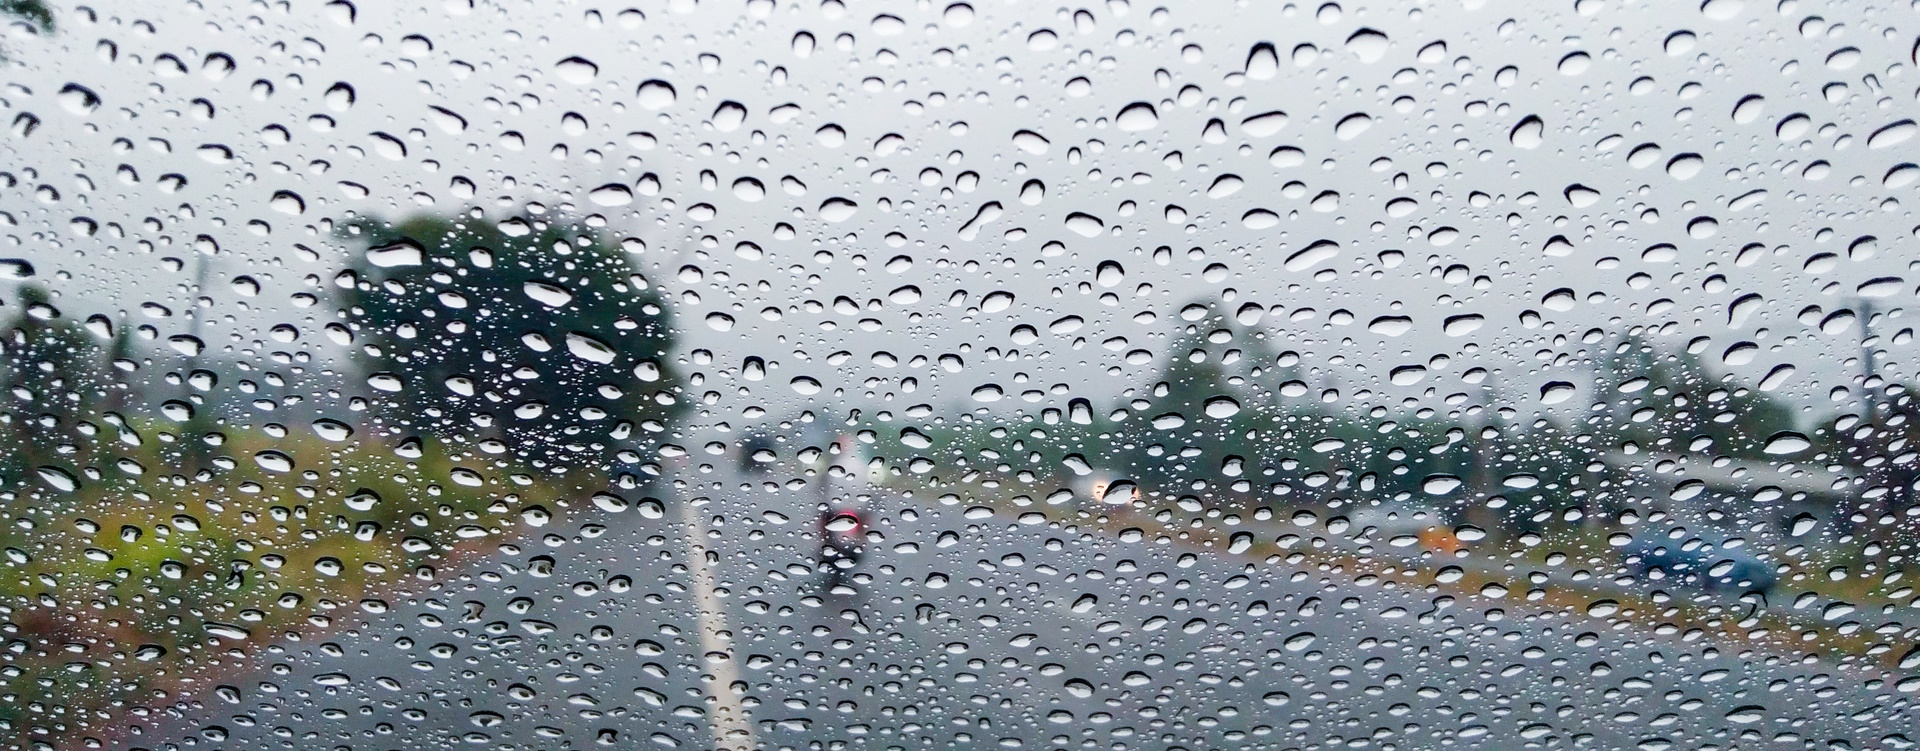 Samořízené vozidlo v prudkém dešti